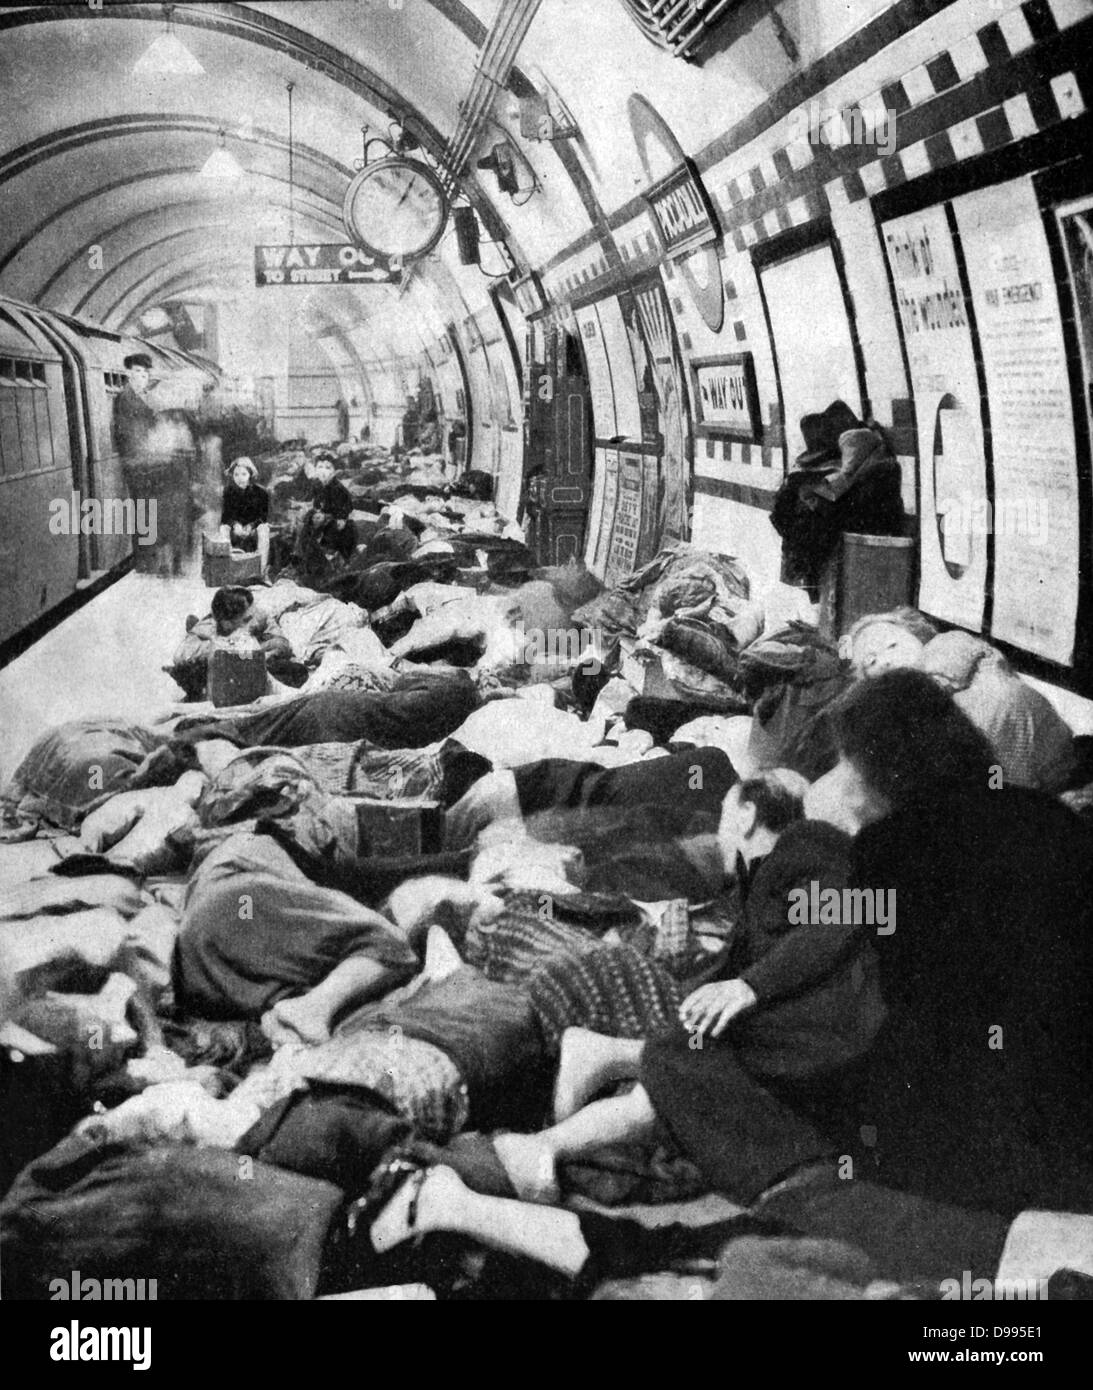 Les londoniens à l'abri sur la plate-forme d'une station sur le tube (métro) pendant le Blitz. Londres a été bombardé le 76 nuits consécutives par la Luftwaffe (Armée de l'air allemande) entre juillet 1940 et mai 1941. Banque D'Images